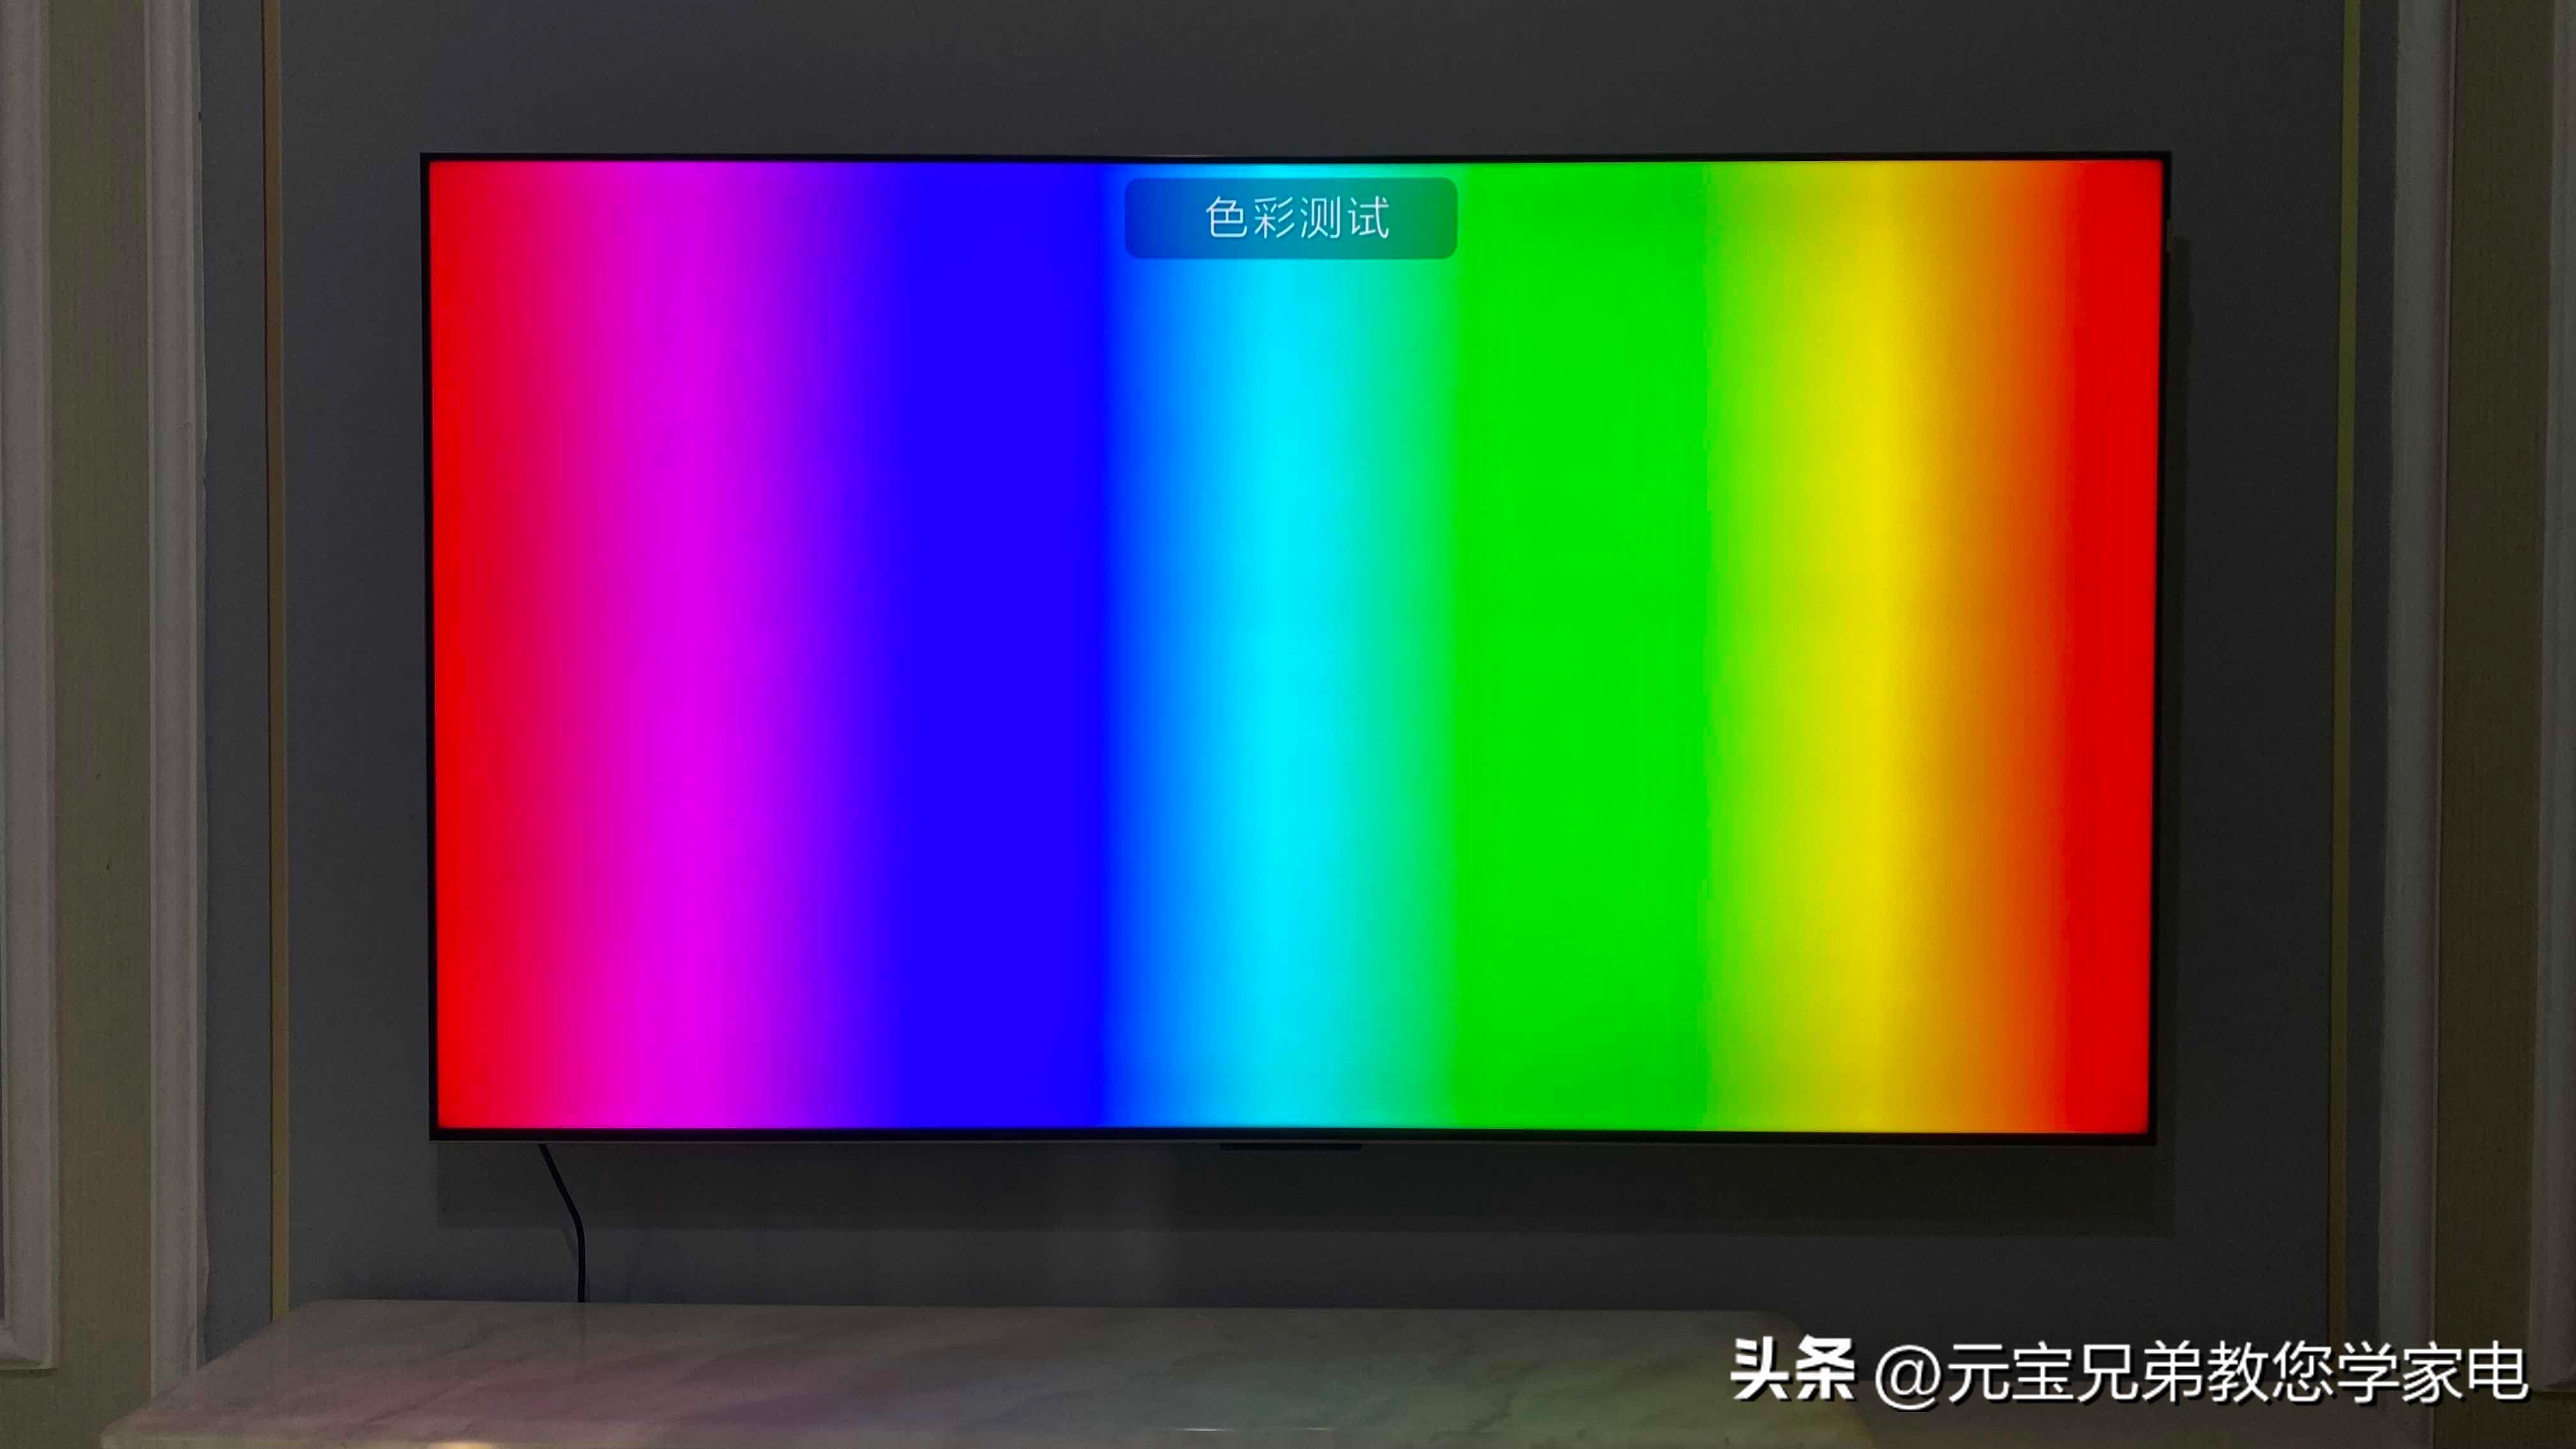 3D智能电视机的色彩效果如何?体验全方位立体视觉盛宴！